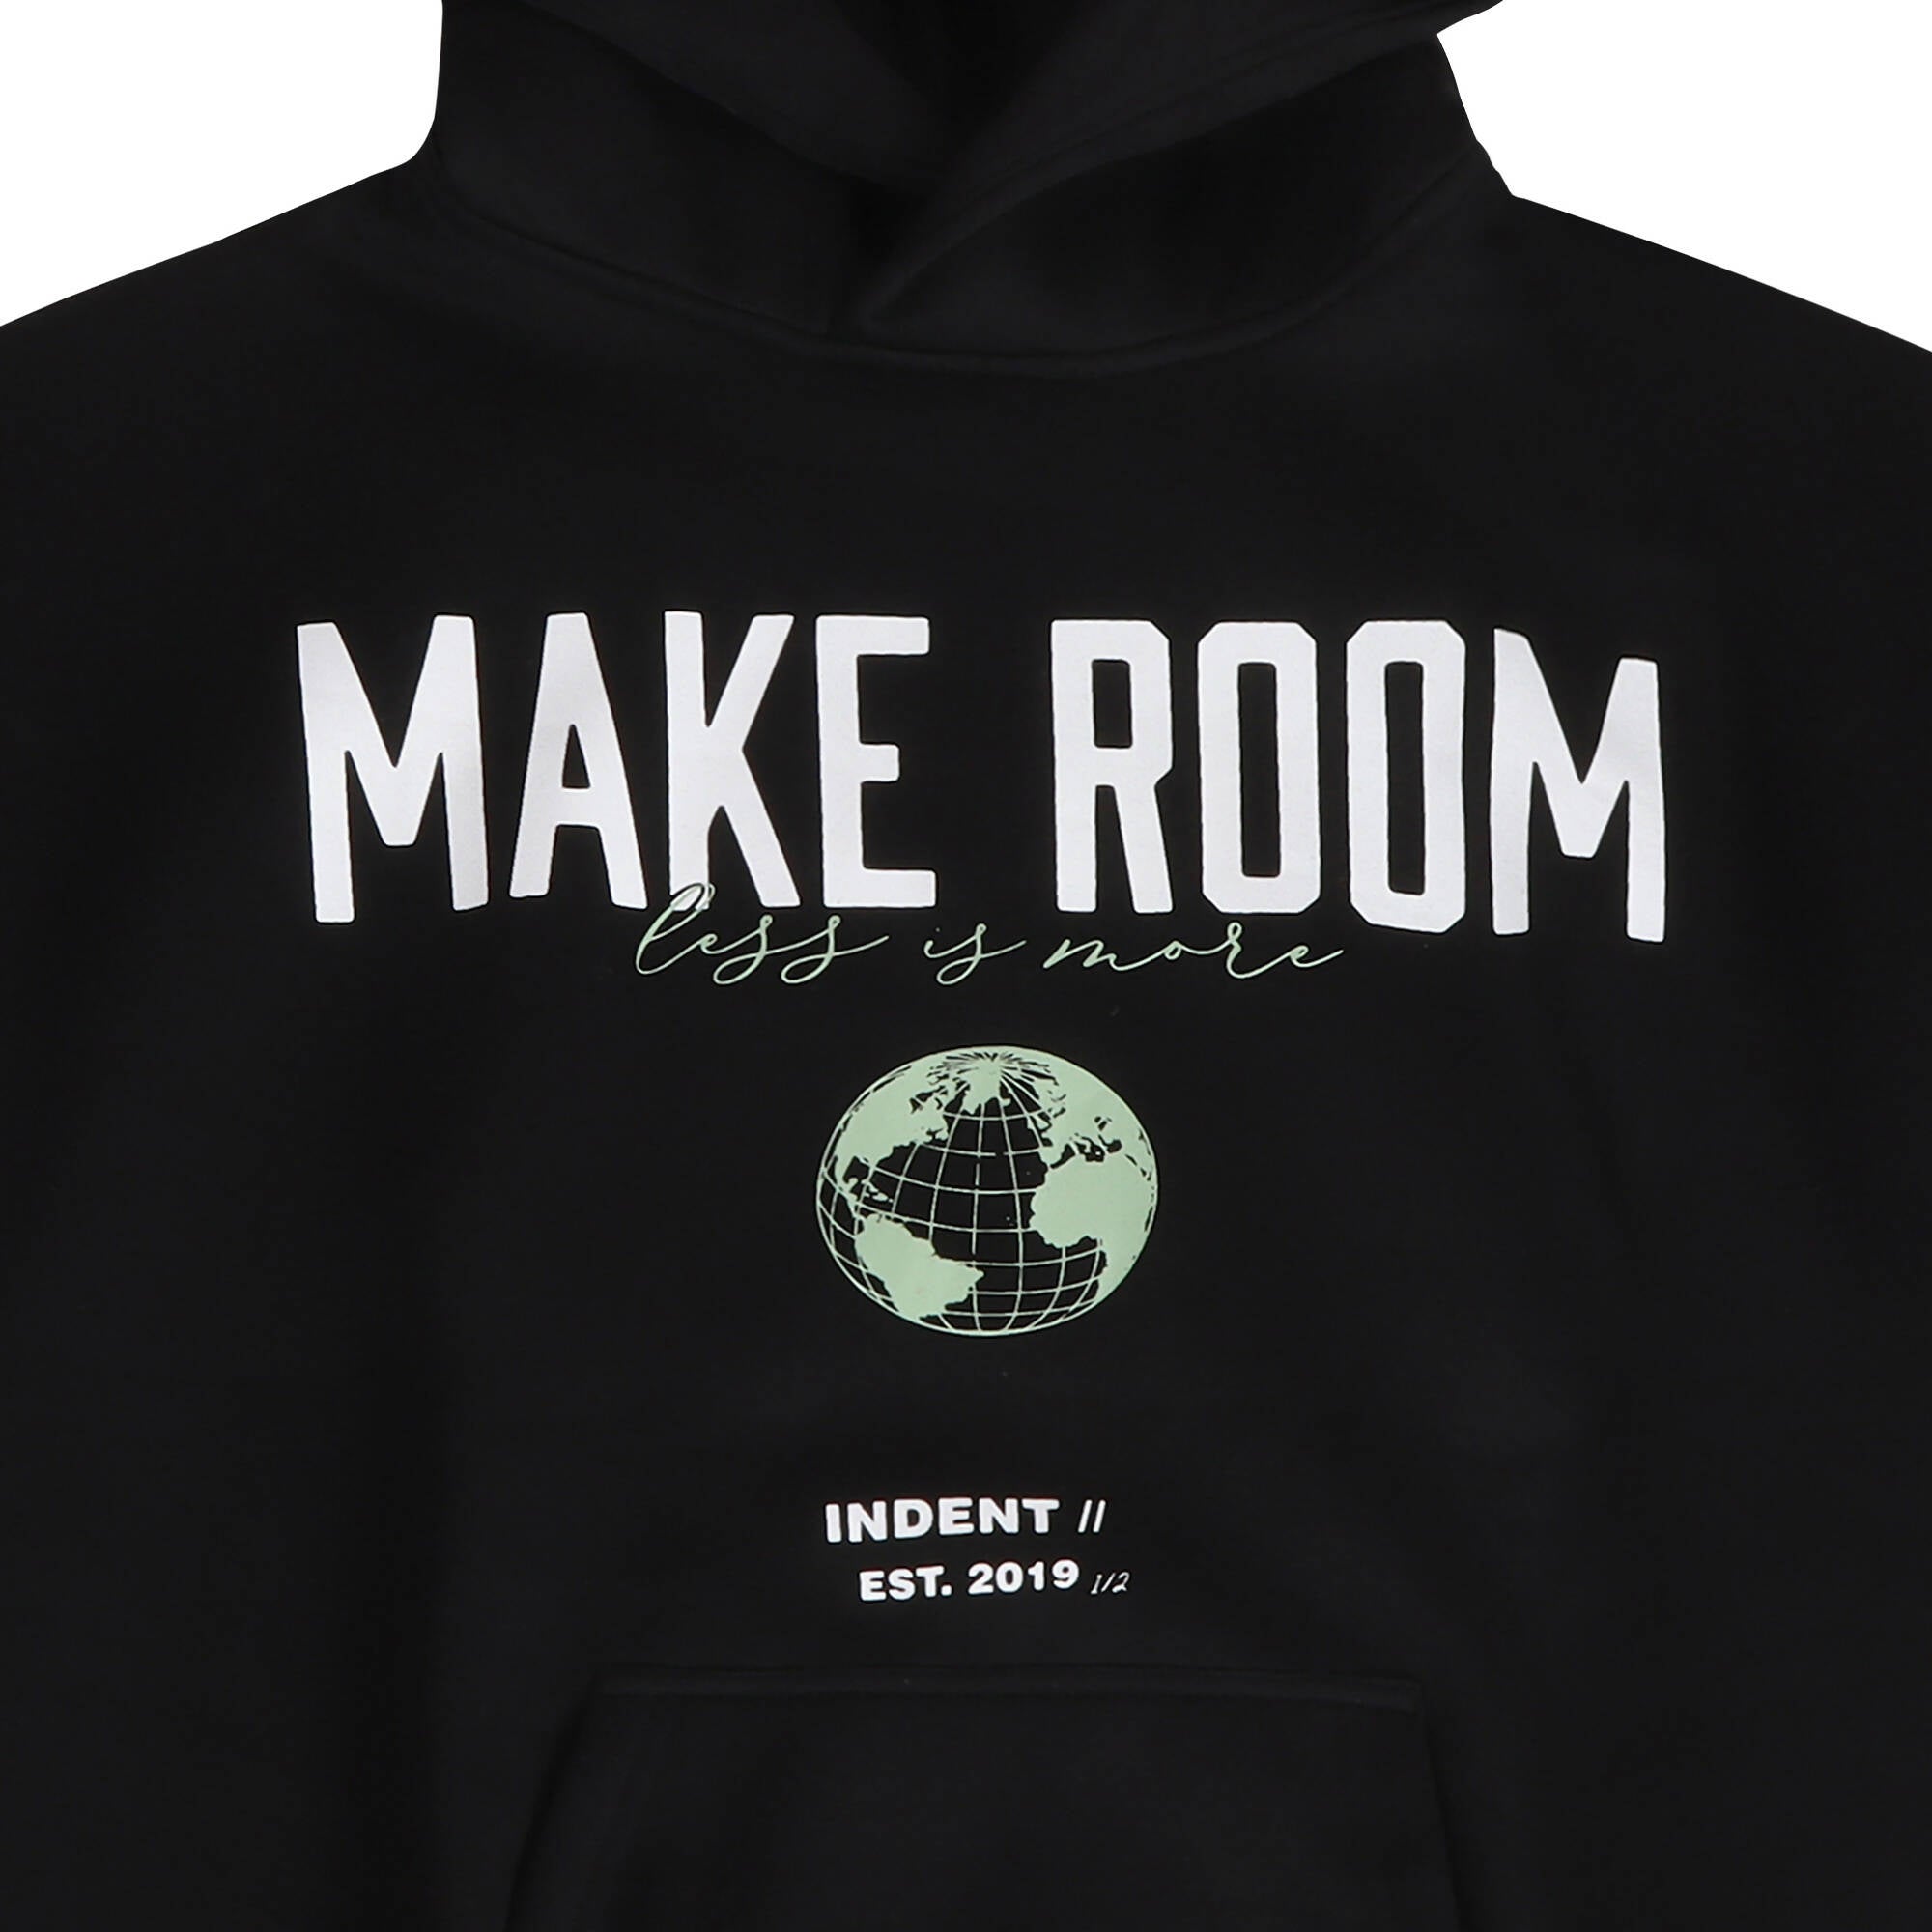 "Make Room" Hoodie - Catastrophic Black